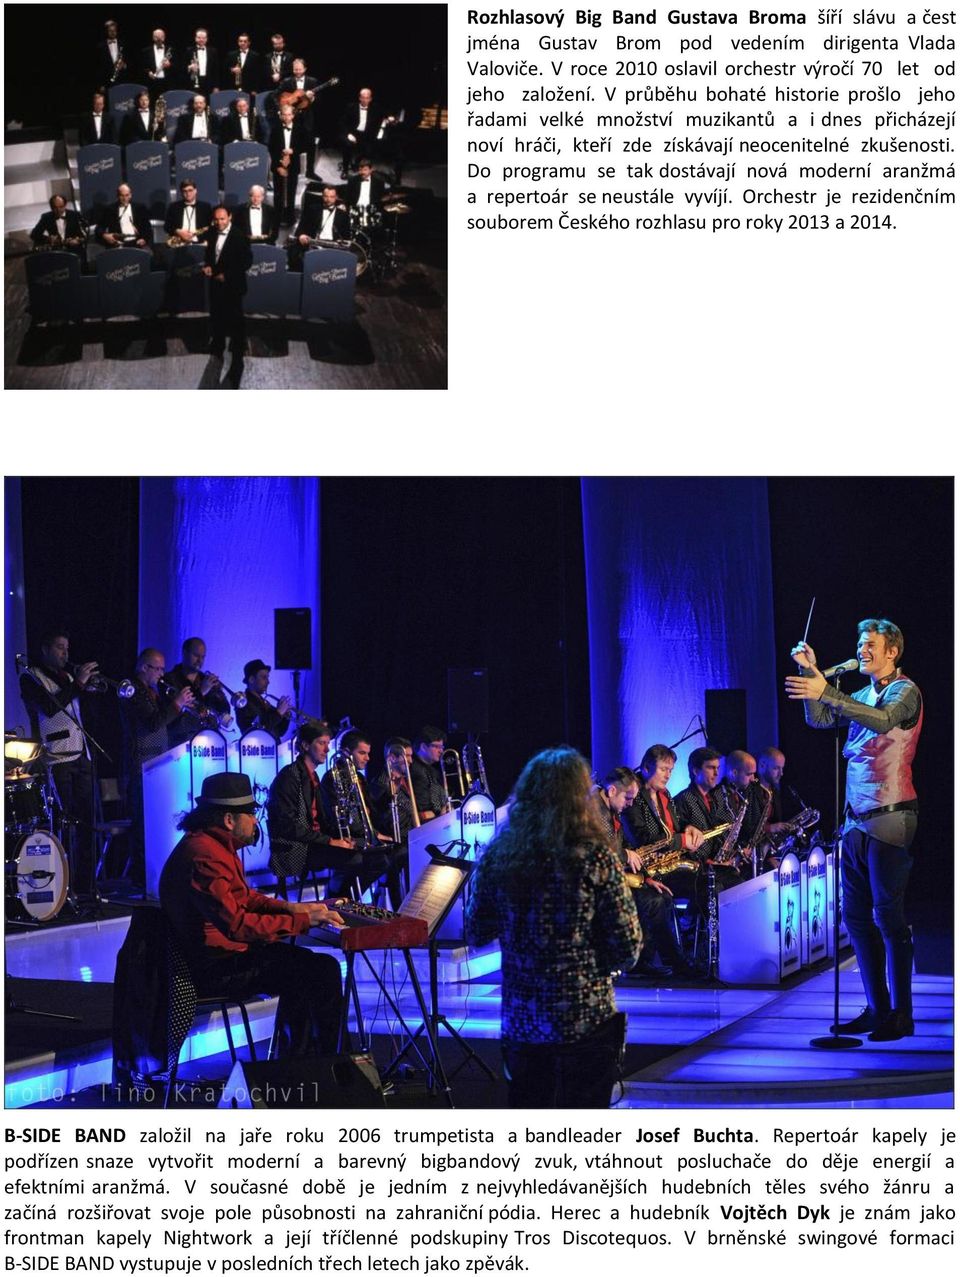 Do programu se tak dostávají nová moderní aranžmá a repertoár se neustále vyvíjí. Orchestr je rezidenčním souborem Českého rozhlasu pro roky 2013 a 2014.